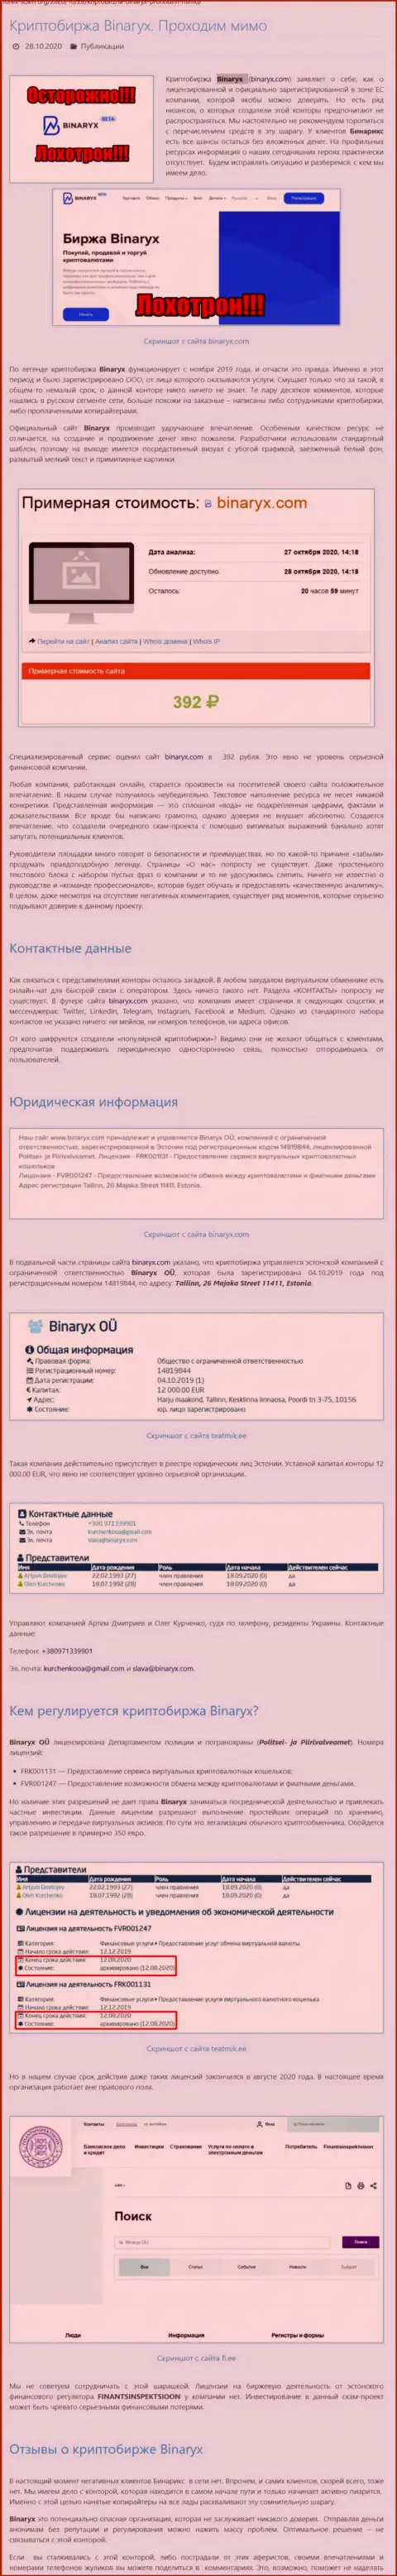 Binaryx Com - это АФЕРИСТЫ !!! Прикарманивание депозитов гарантируют стопроцентно (обзор компании)